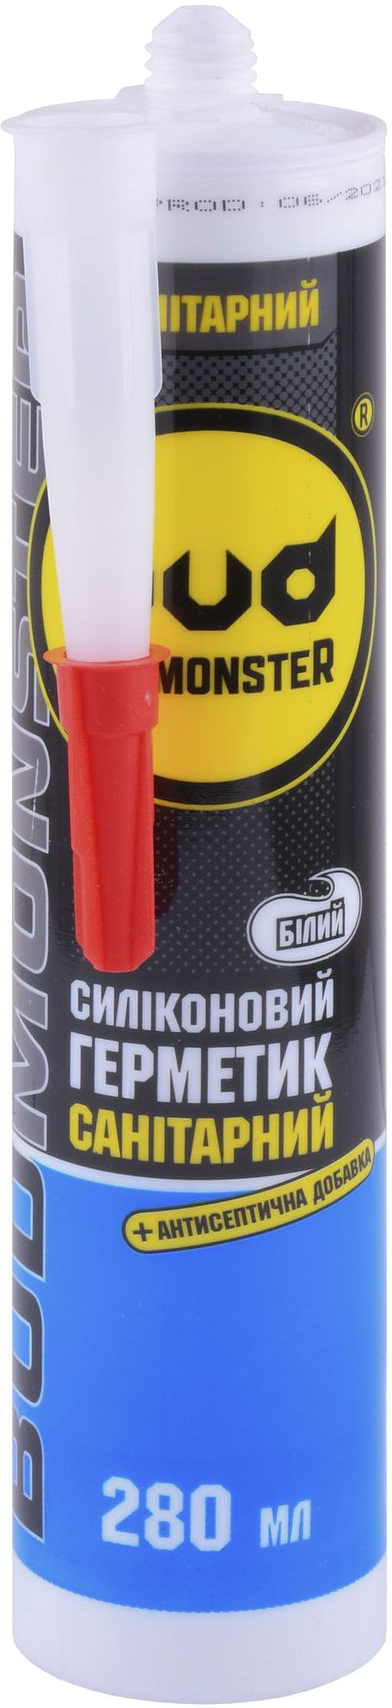 Цена герметик на силиконовой основе санитарный Budmonster 280мл белый в Киеве